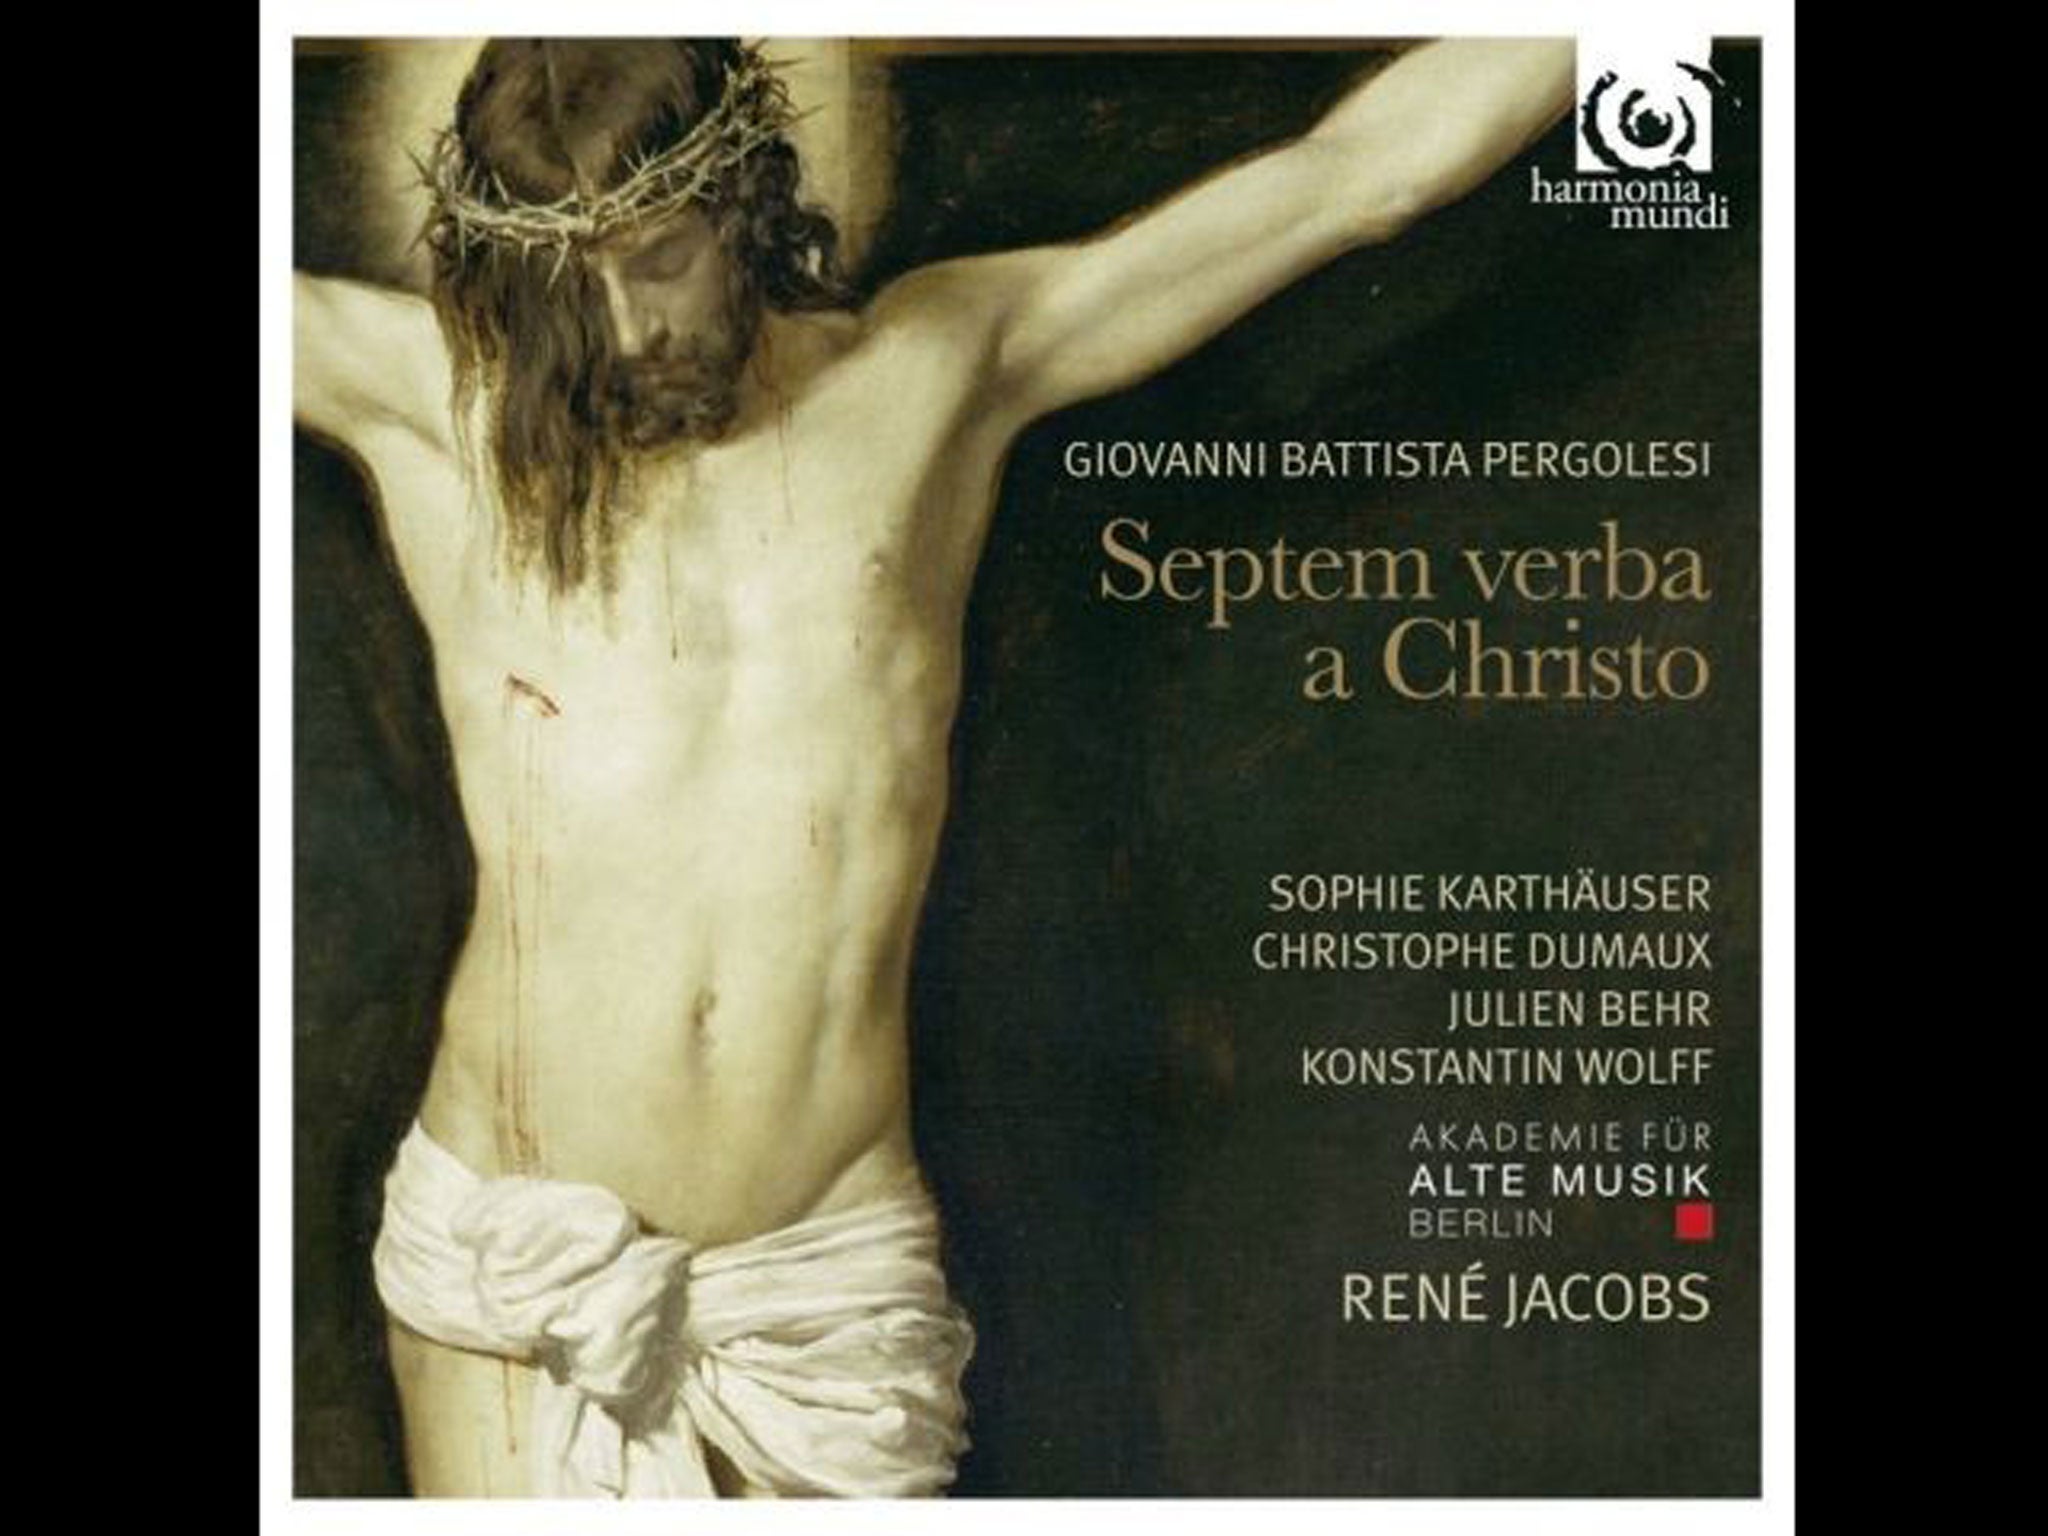 René Jacobs, Akademie Für Alte Musik Berlin Pergolesi: Septem Verba a Christo (Harmonia Mundi)